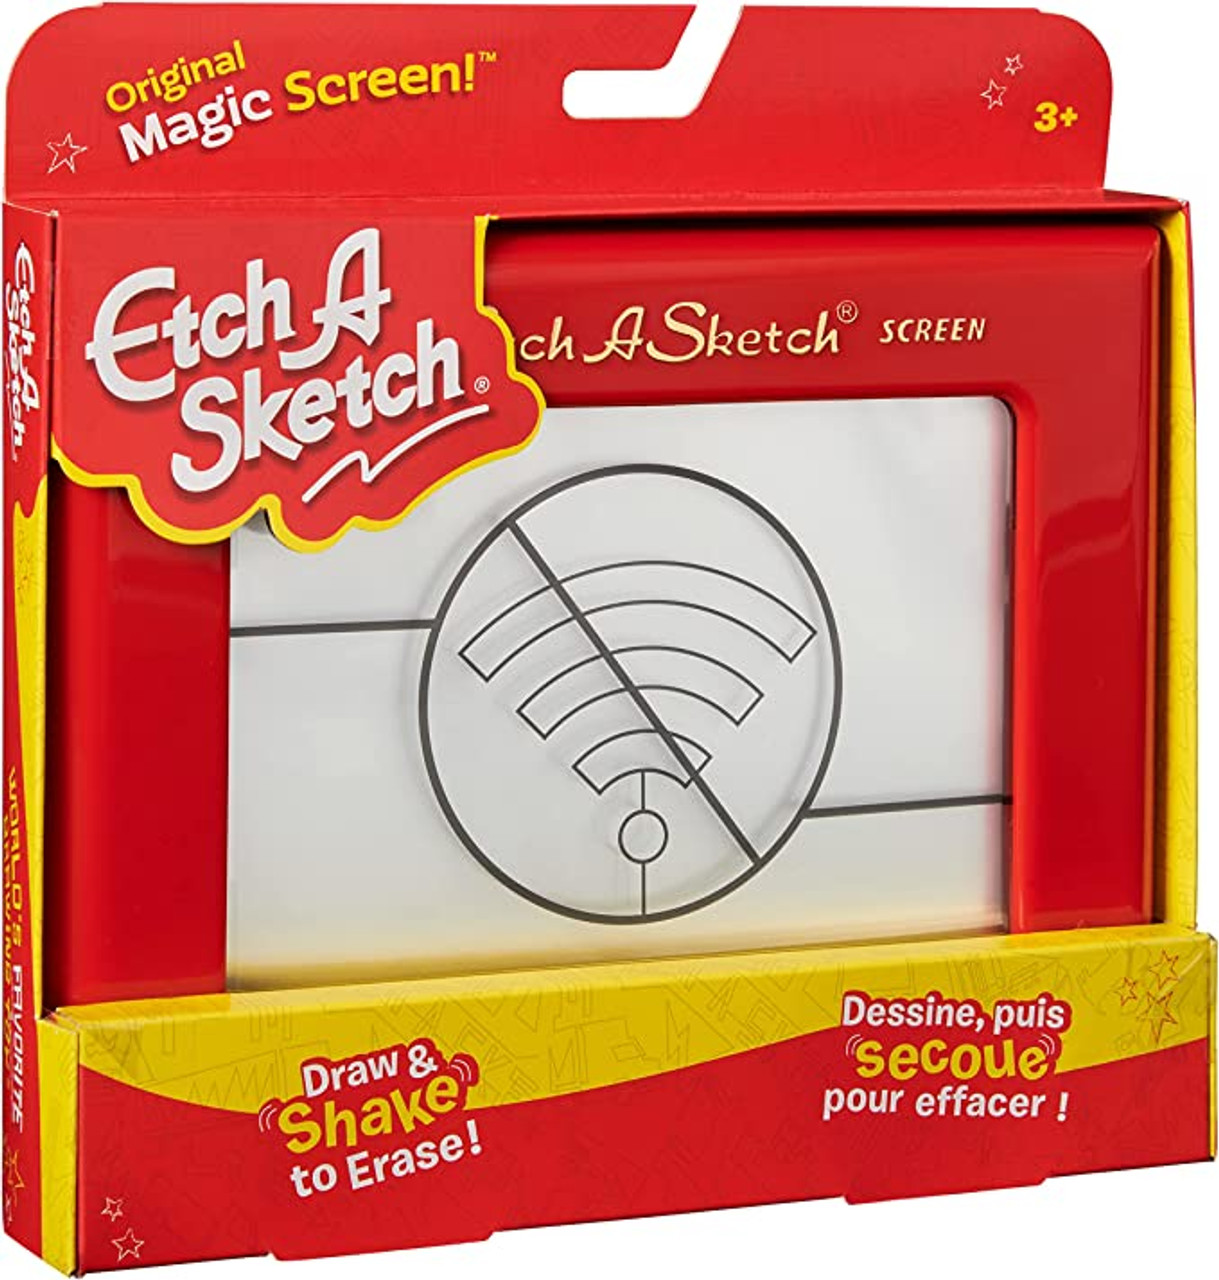 etch a sketch, Toys, Vintage Etchasketch